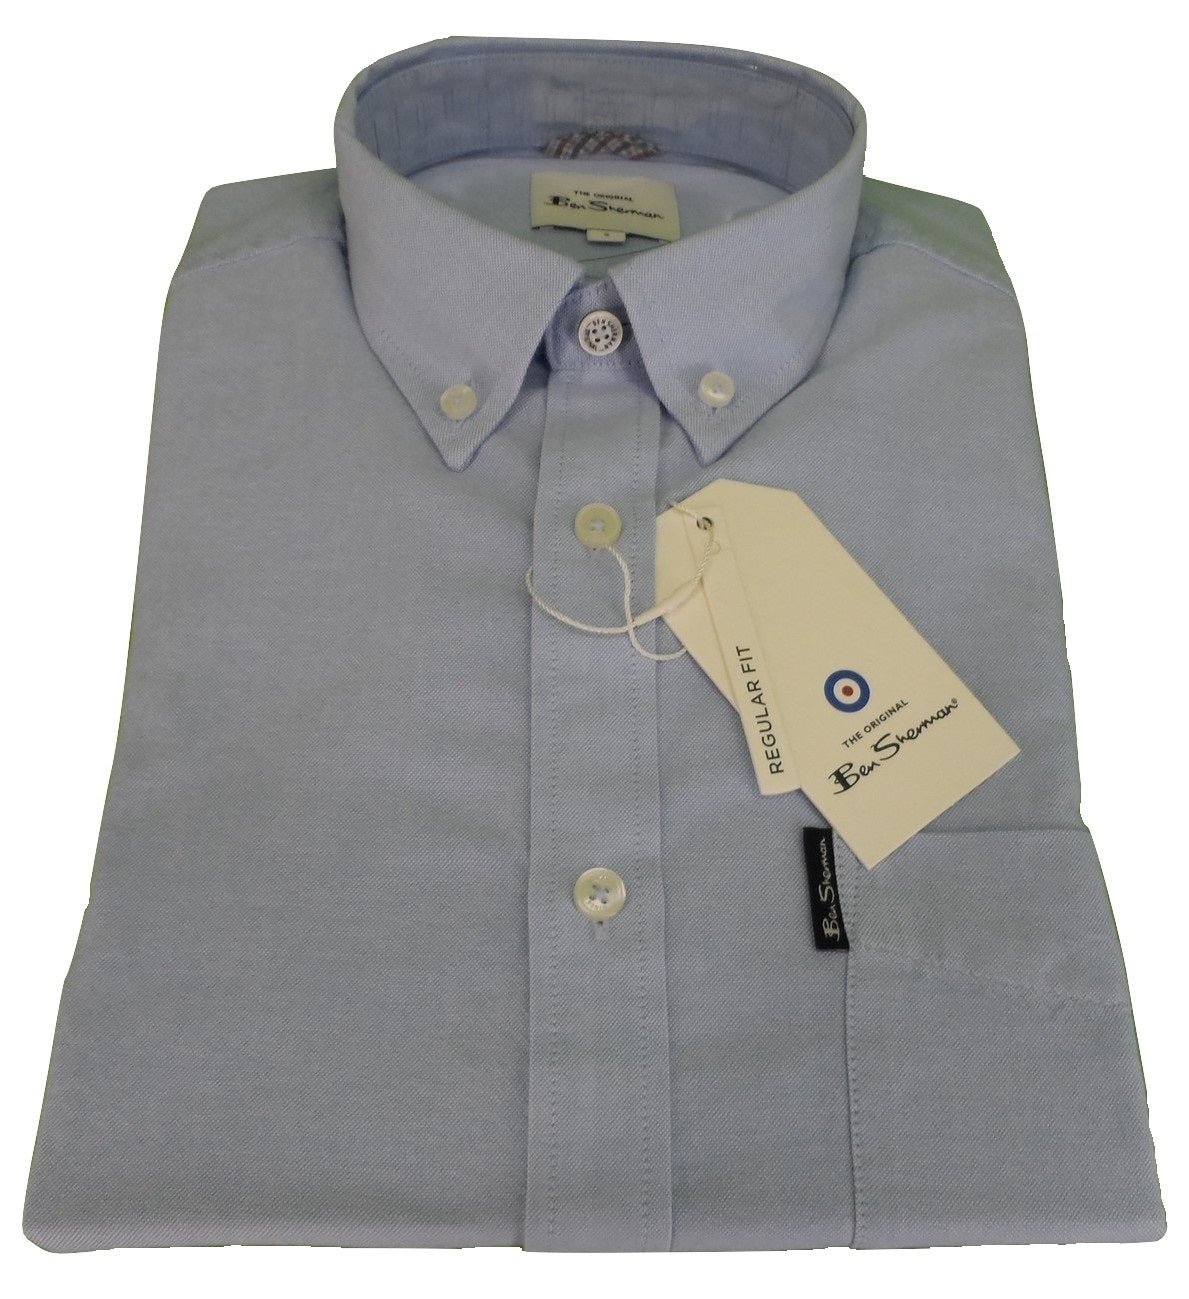 Ben Sherman Camisas Oxford azules de manga corta para hombre 100% algodón